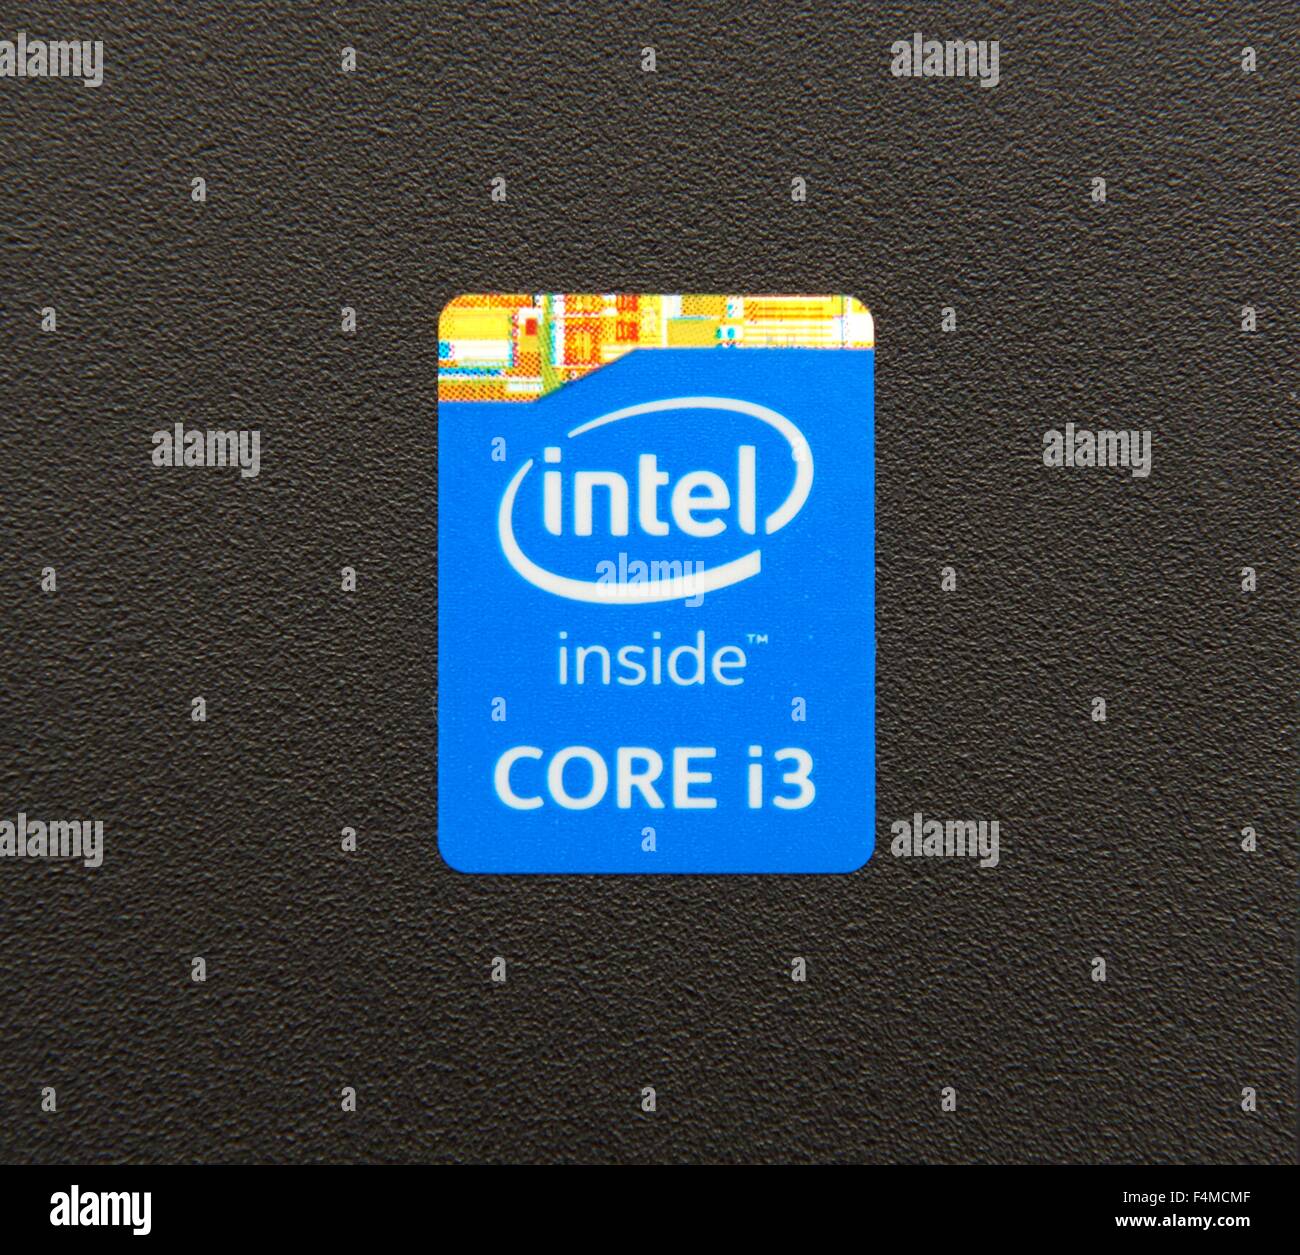 Intel inside Banque de photographies et d'images à haute résolution - Alamy